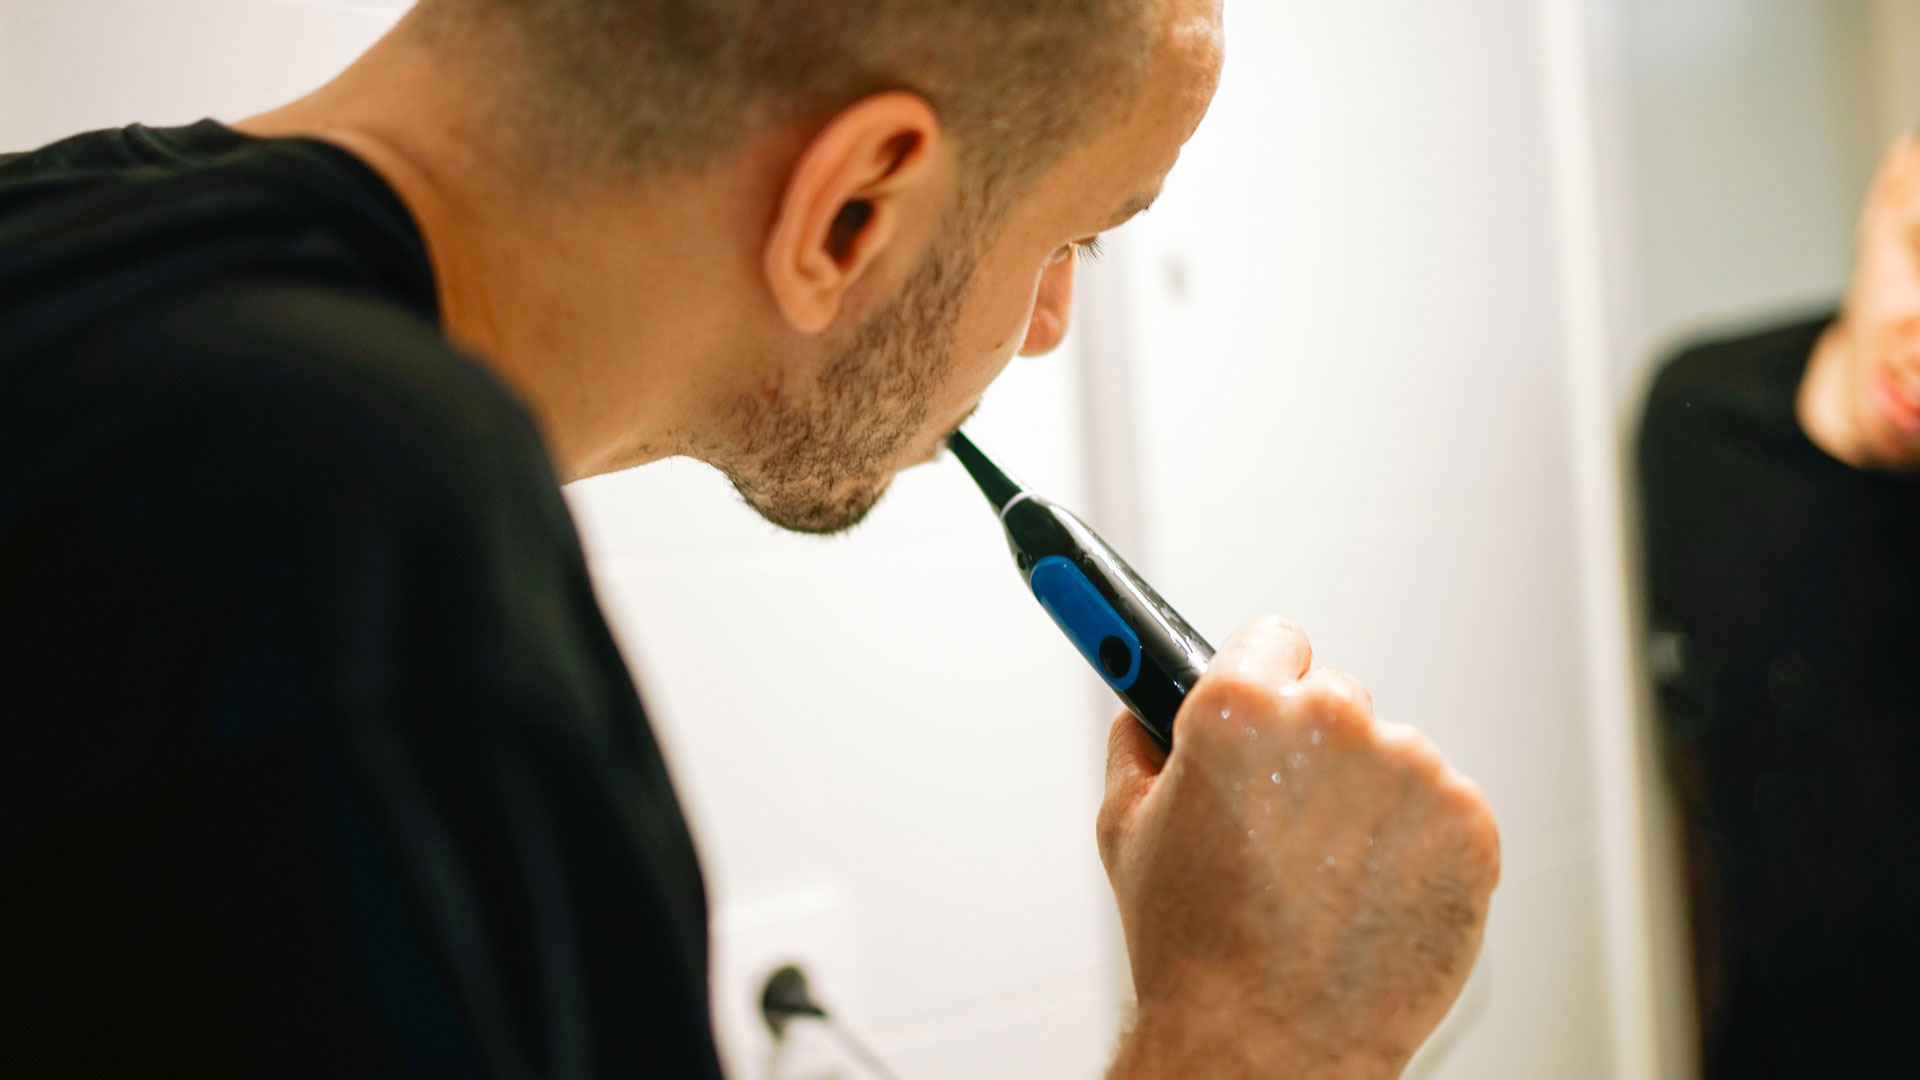 Das Bild zeigt einen Mann, der sich im Spiegel die Zähne putzt